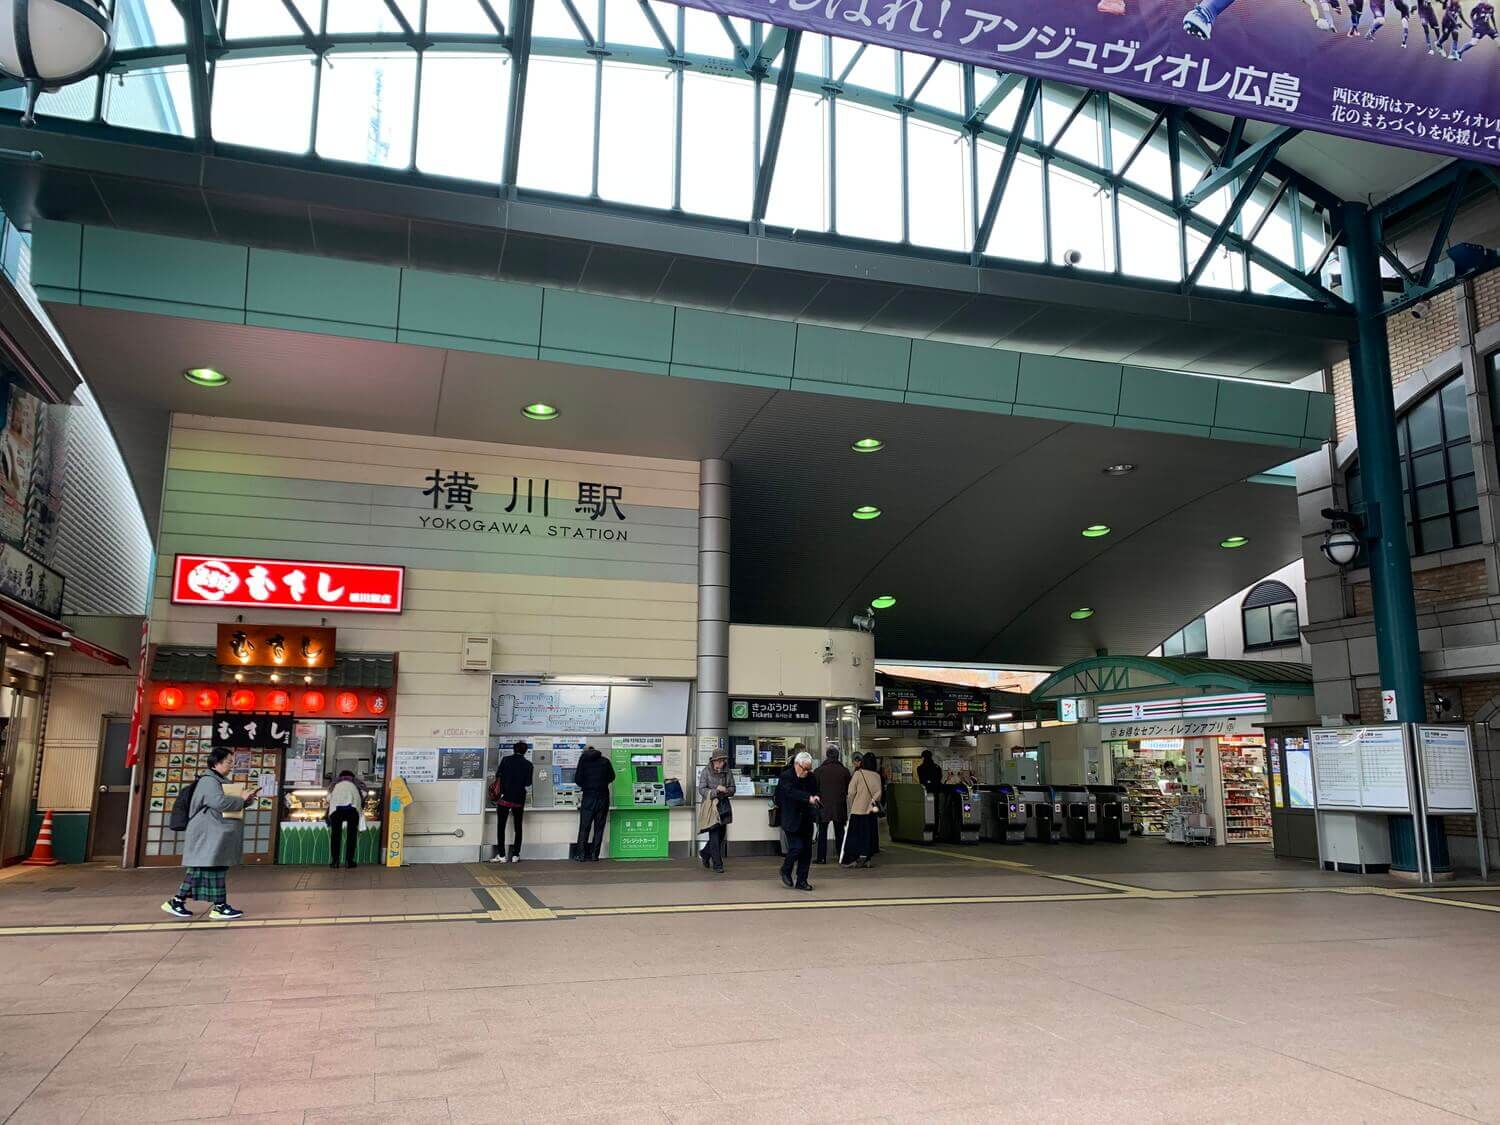 JR Yokokawa Station South Exit Ticket Gate